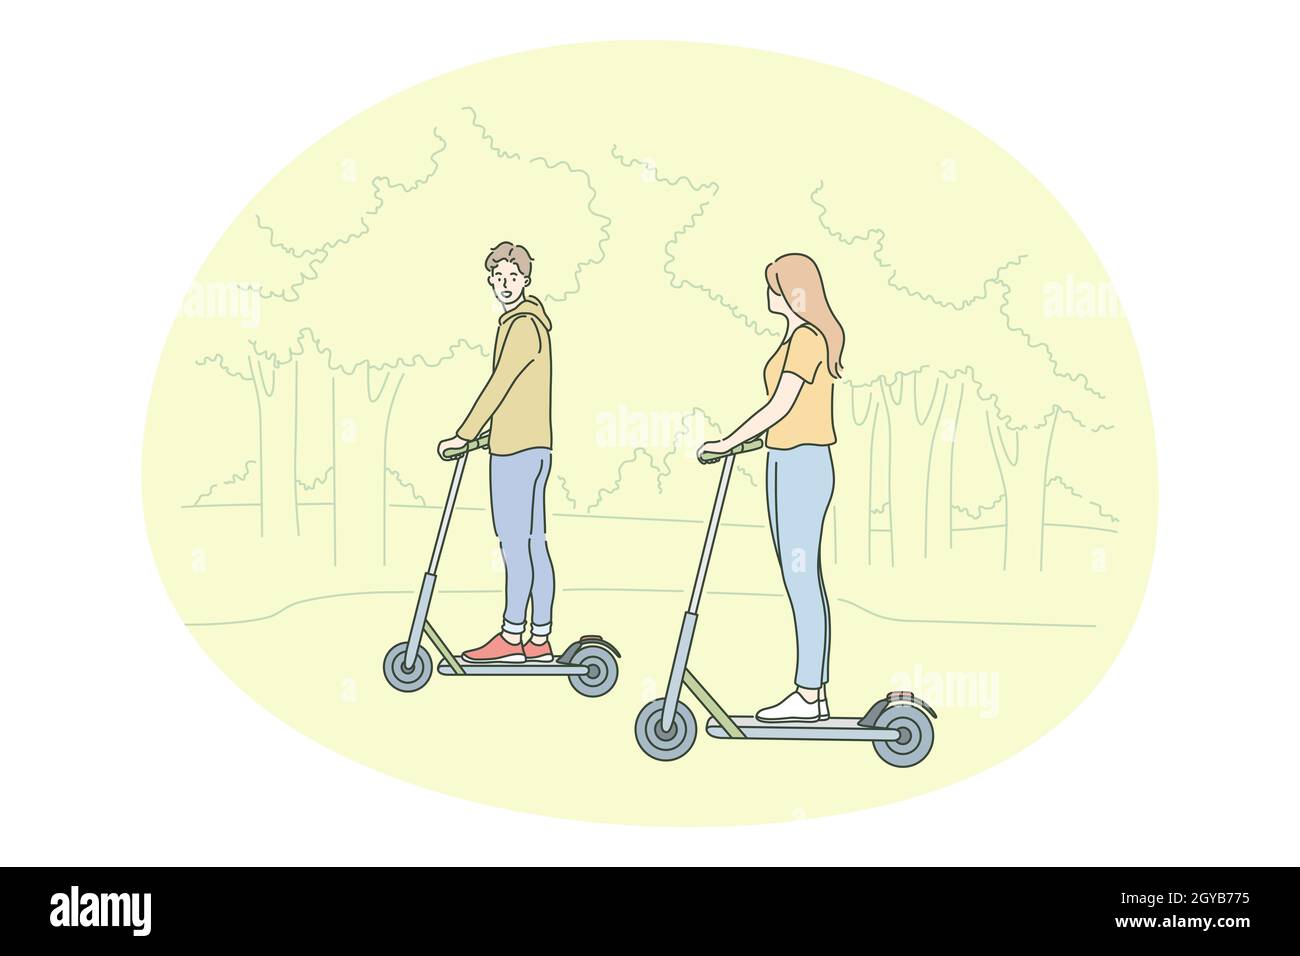 Mode de vie actif sain, sport, loisir concept de passe-temps.Jeune couple heureux appréciant de conduire des scooters ensemble dans le parc sur l'illustration d'été.Climatisation familiale Banque D'Images